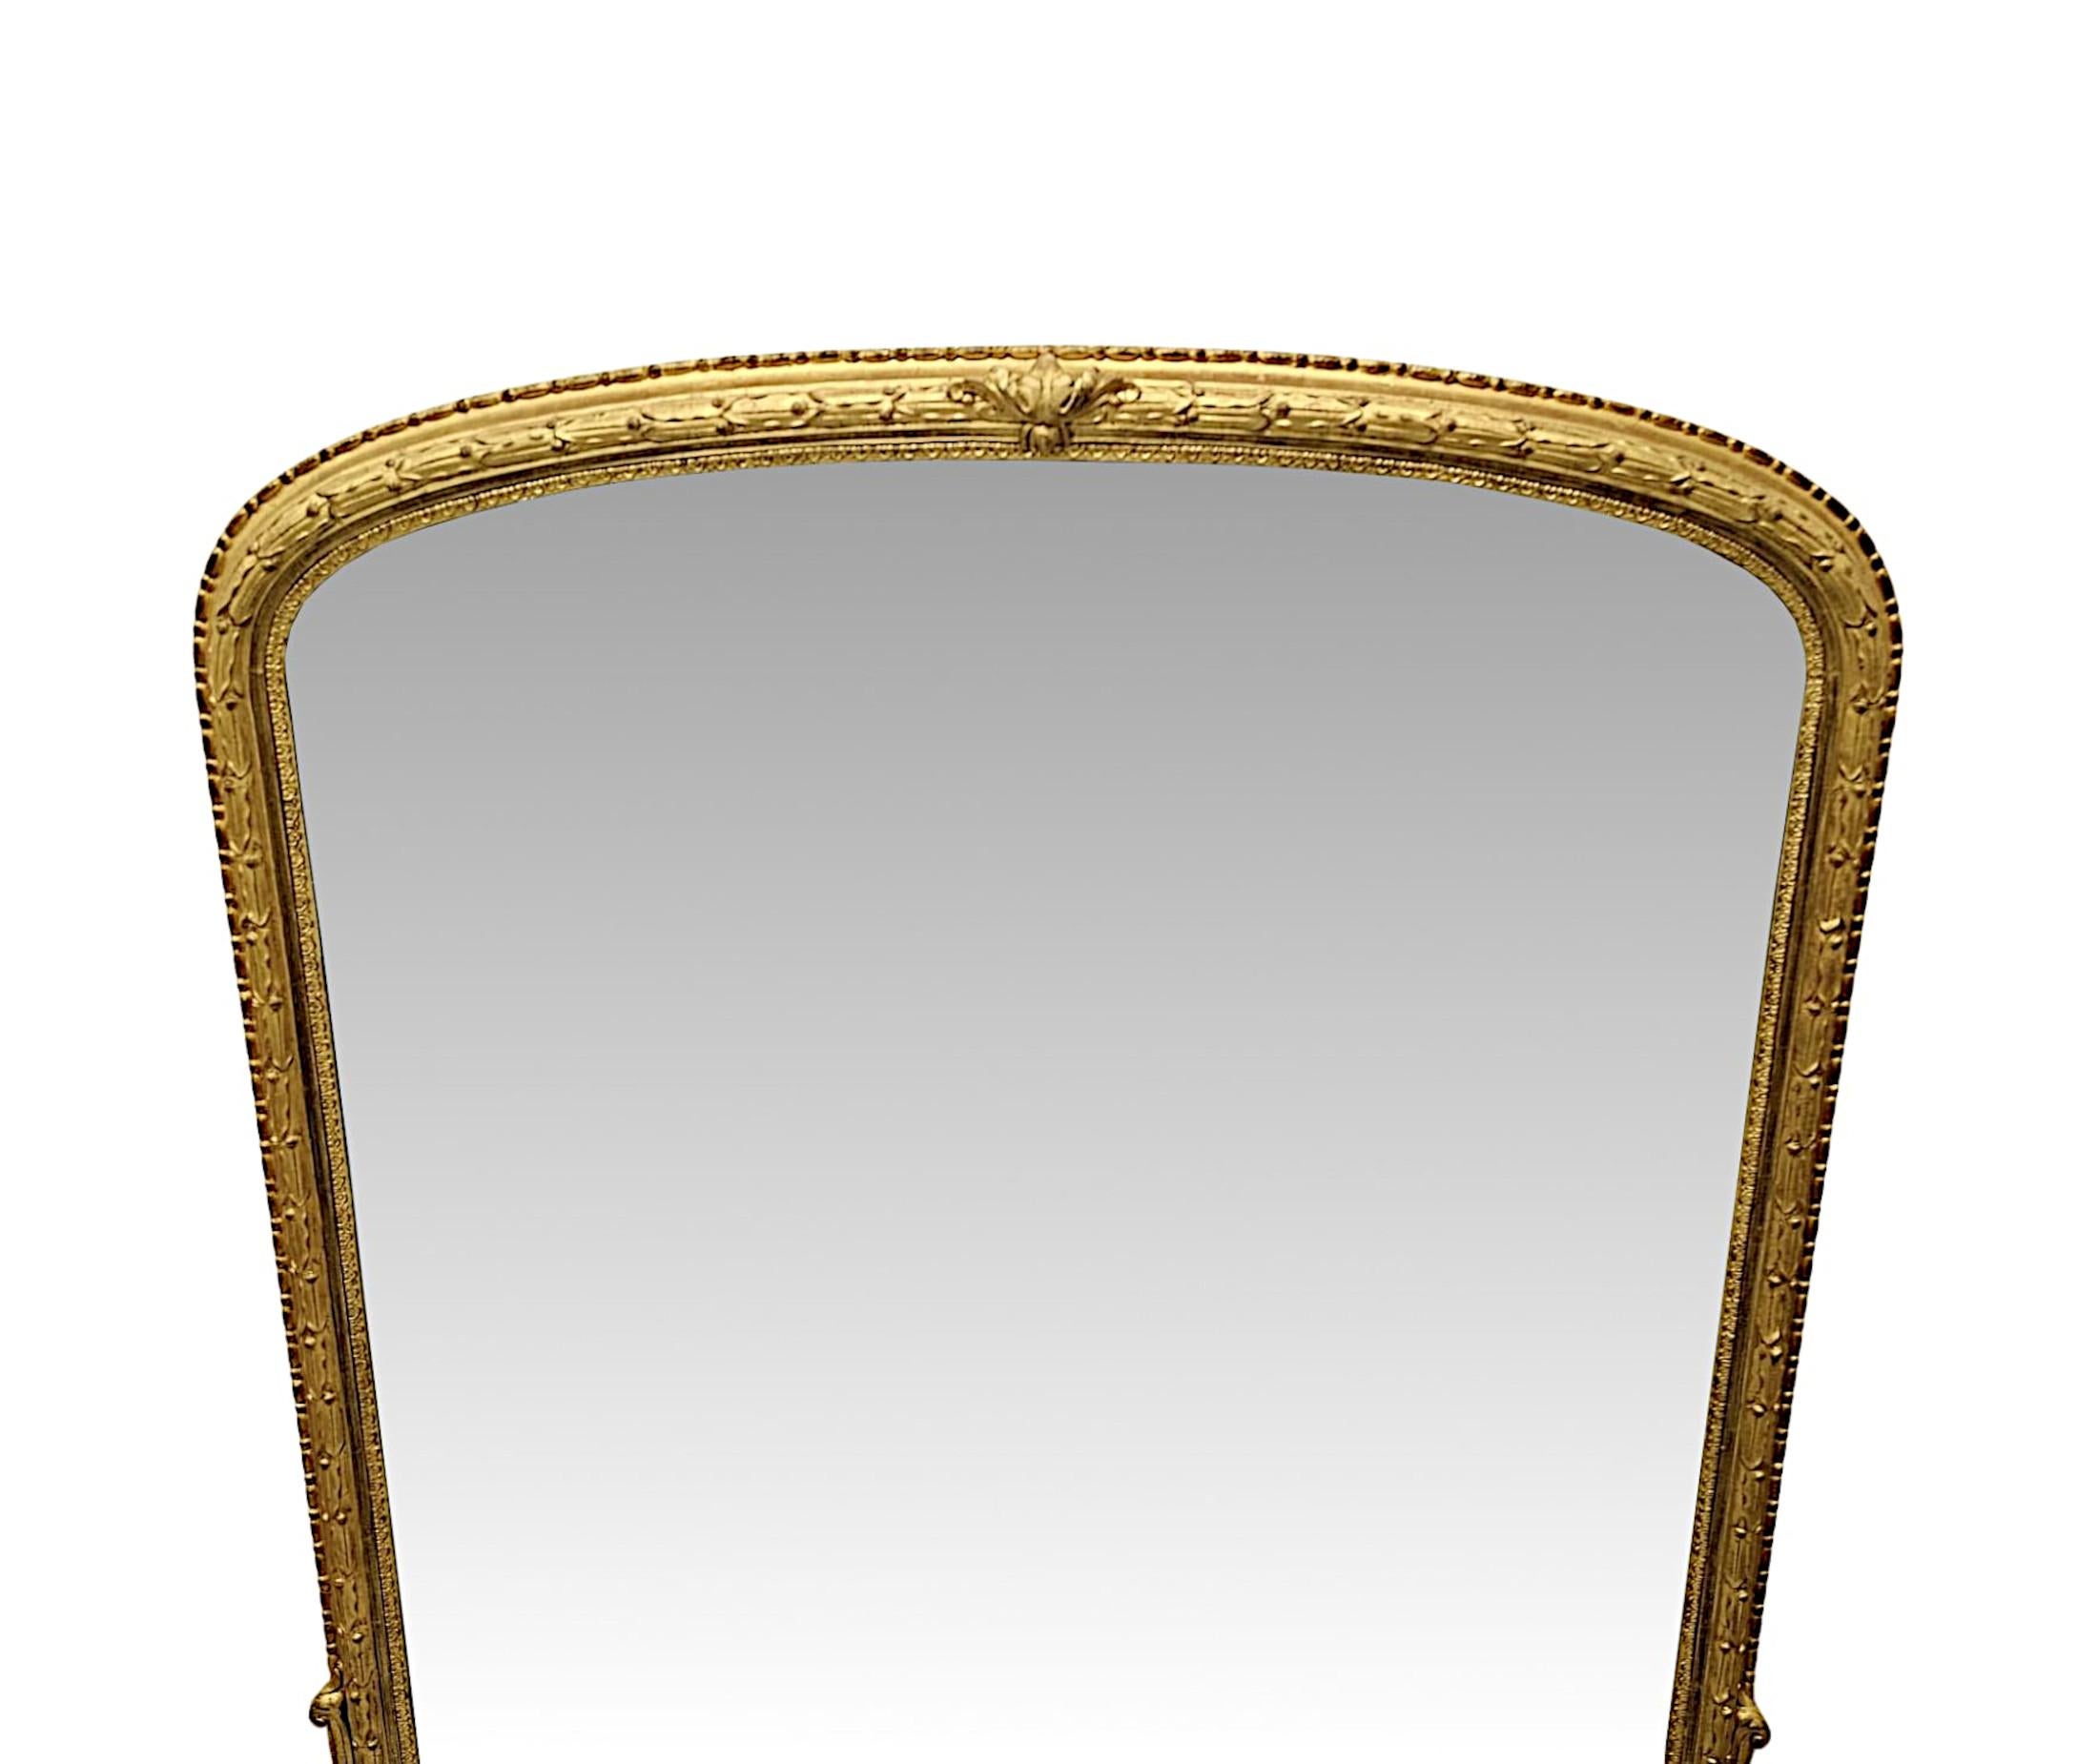 Ein sehr schöner Spiegel aus vergoldetem Holz aus dem 19. Jahrhundert mit großen Ausmaßen und außergewöhnlicher Qualität.  Die wunderschöne, funkelnde Quecksilber-Spiegelglasplatte in Bogenform ist in einen elegant schlichten und fein von Hand